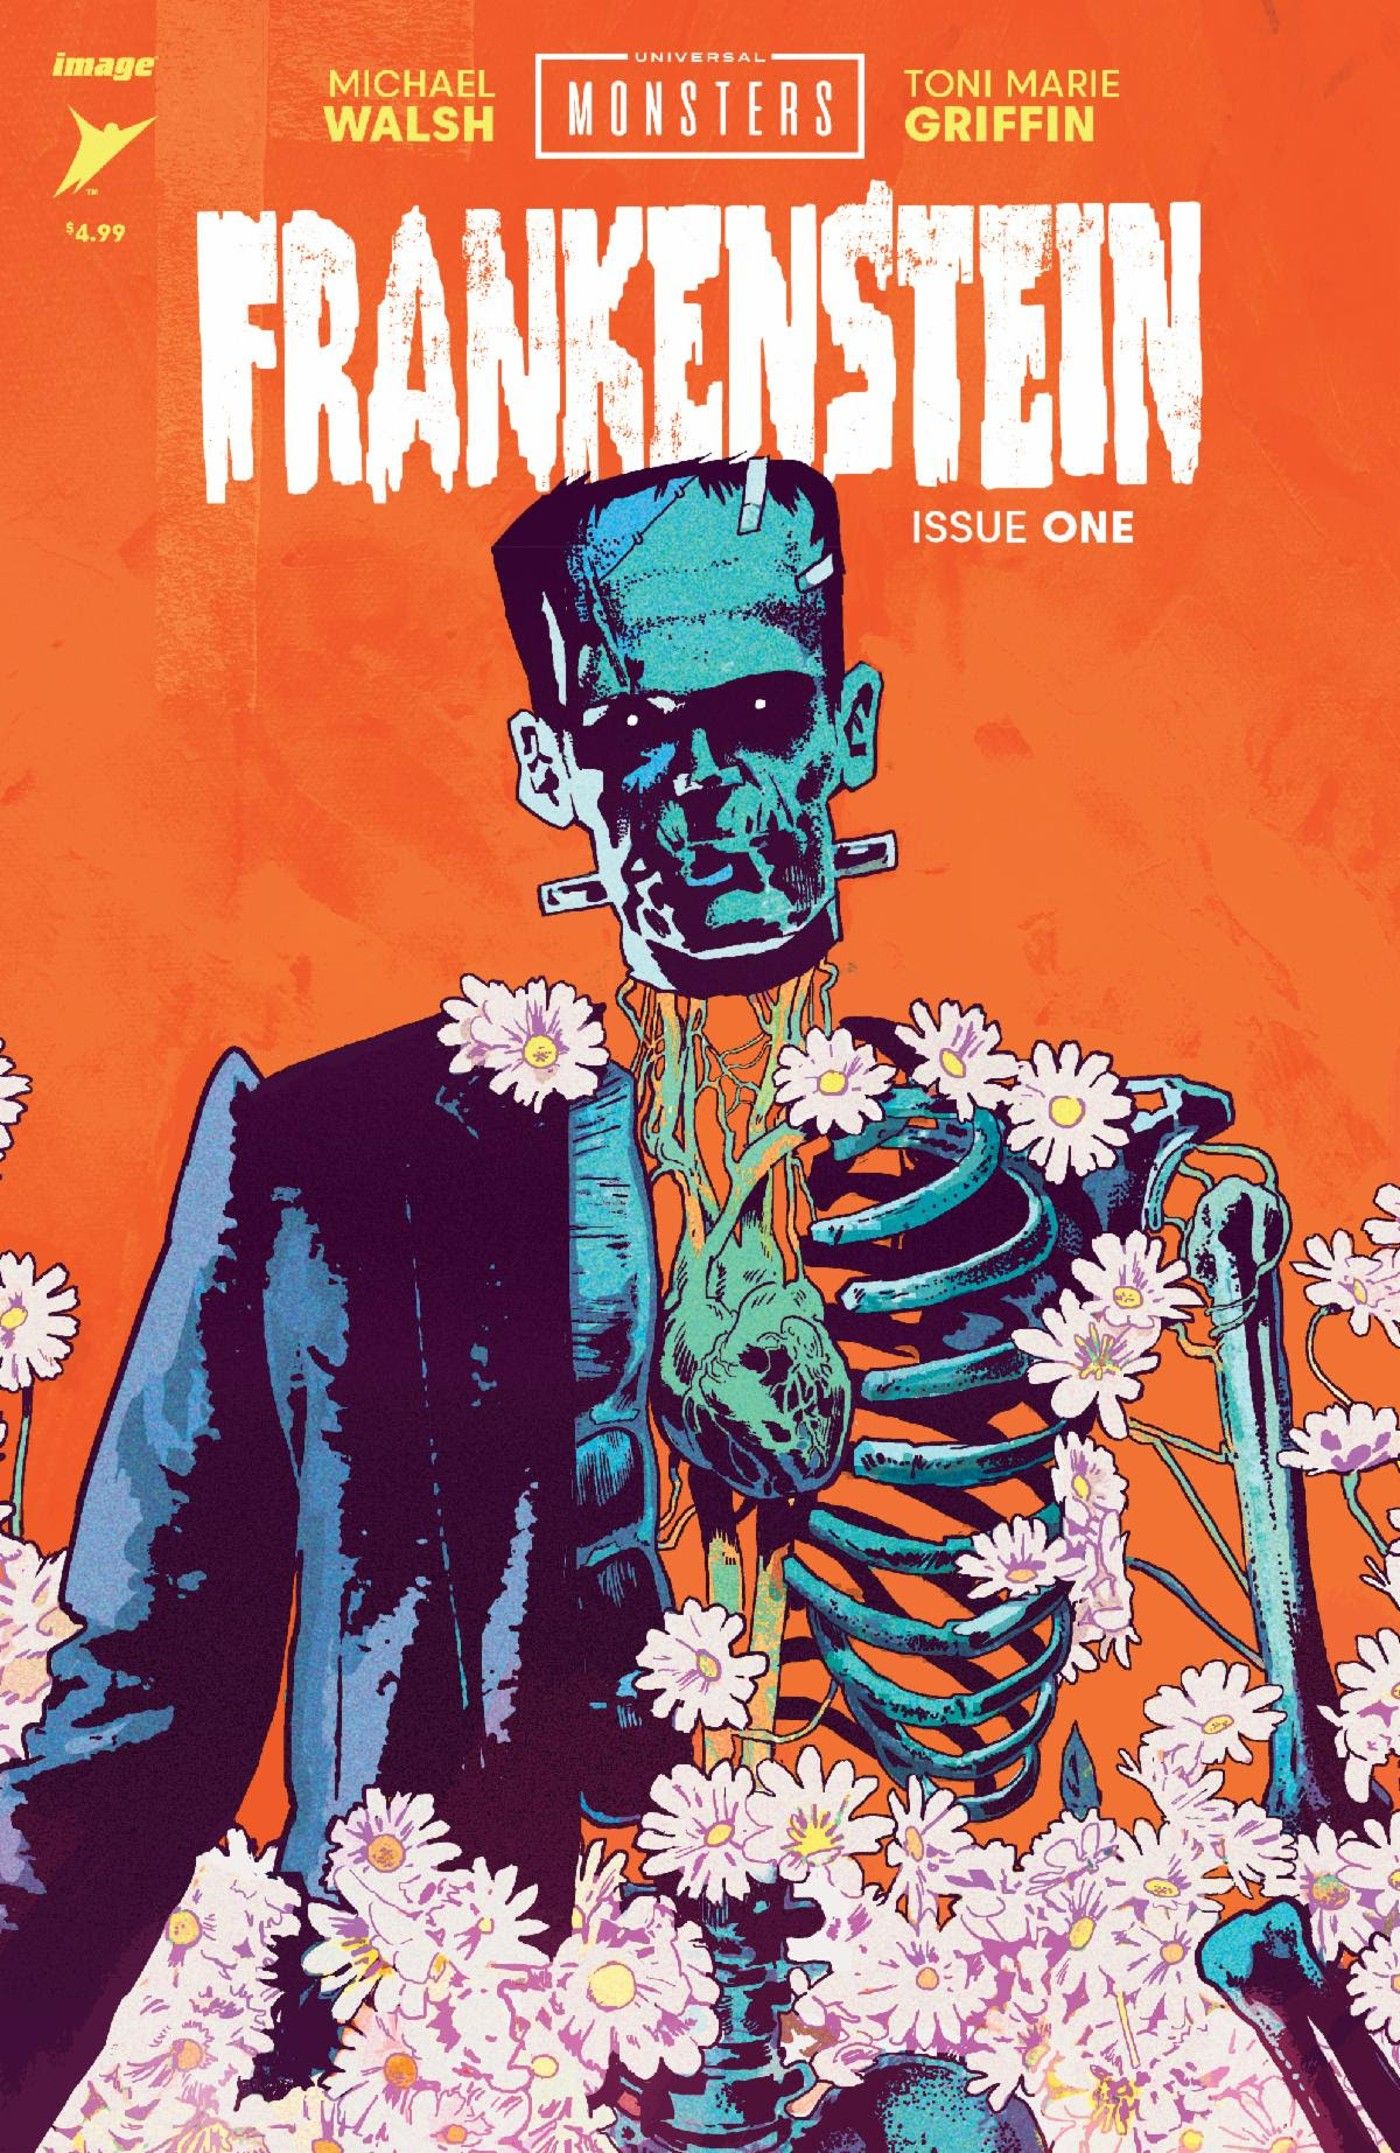 Imagem de um monstro de Frankenstein meio esqueleto e meio carne, cercado por flores.